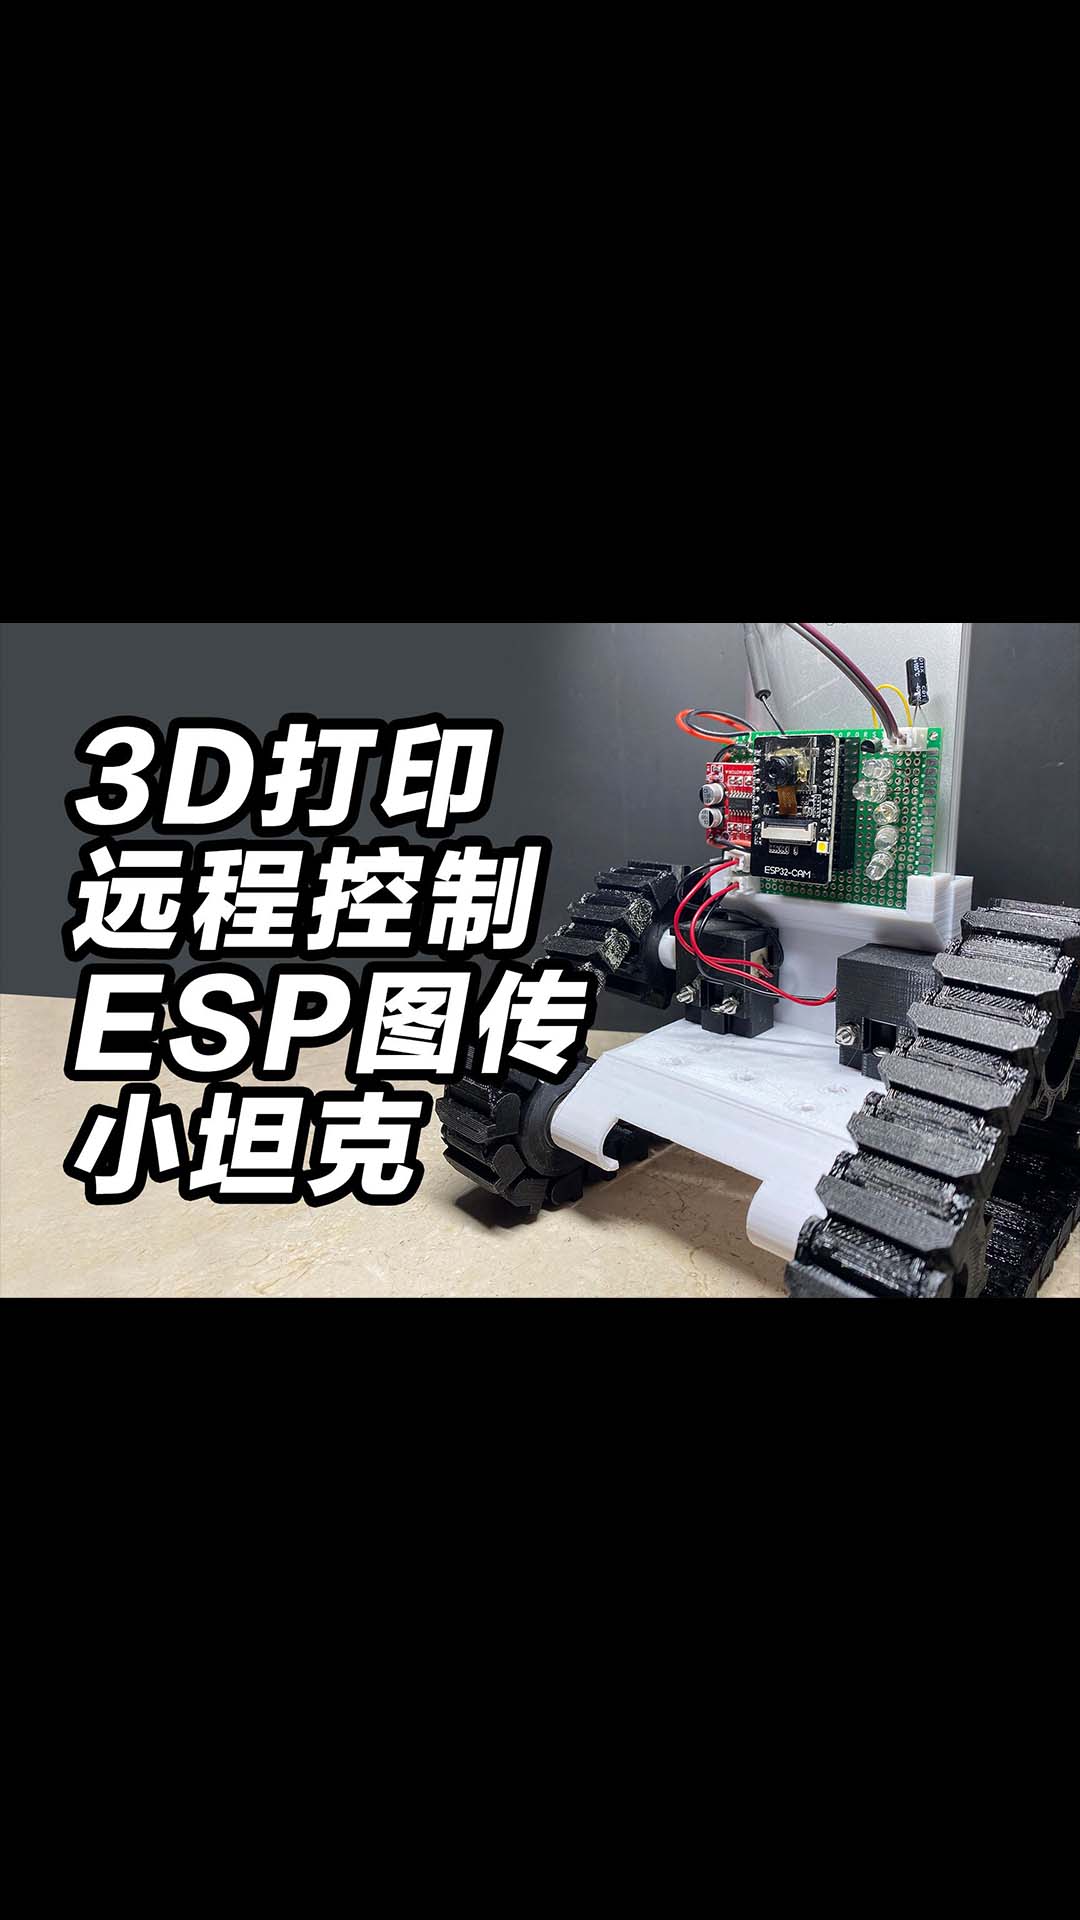 【教程和开源】3D打印远程控制ESP图传小坦克，在世界上任何一个角落都能控制。websocket e